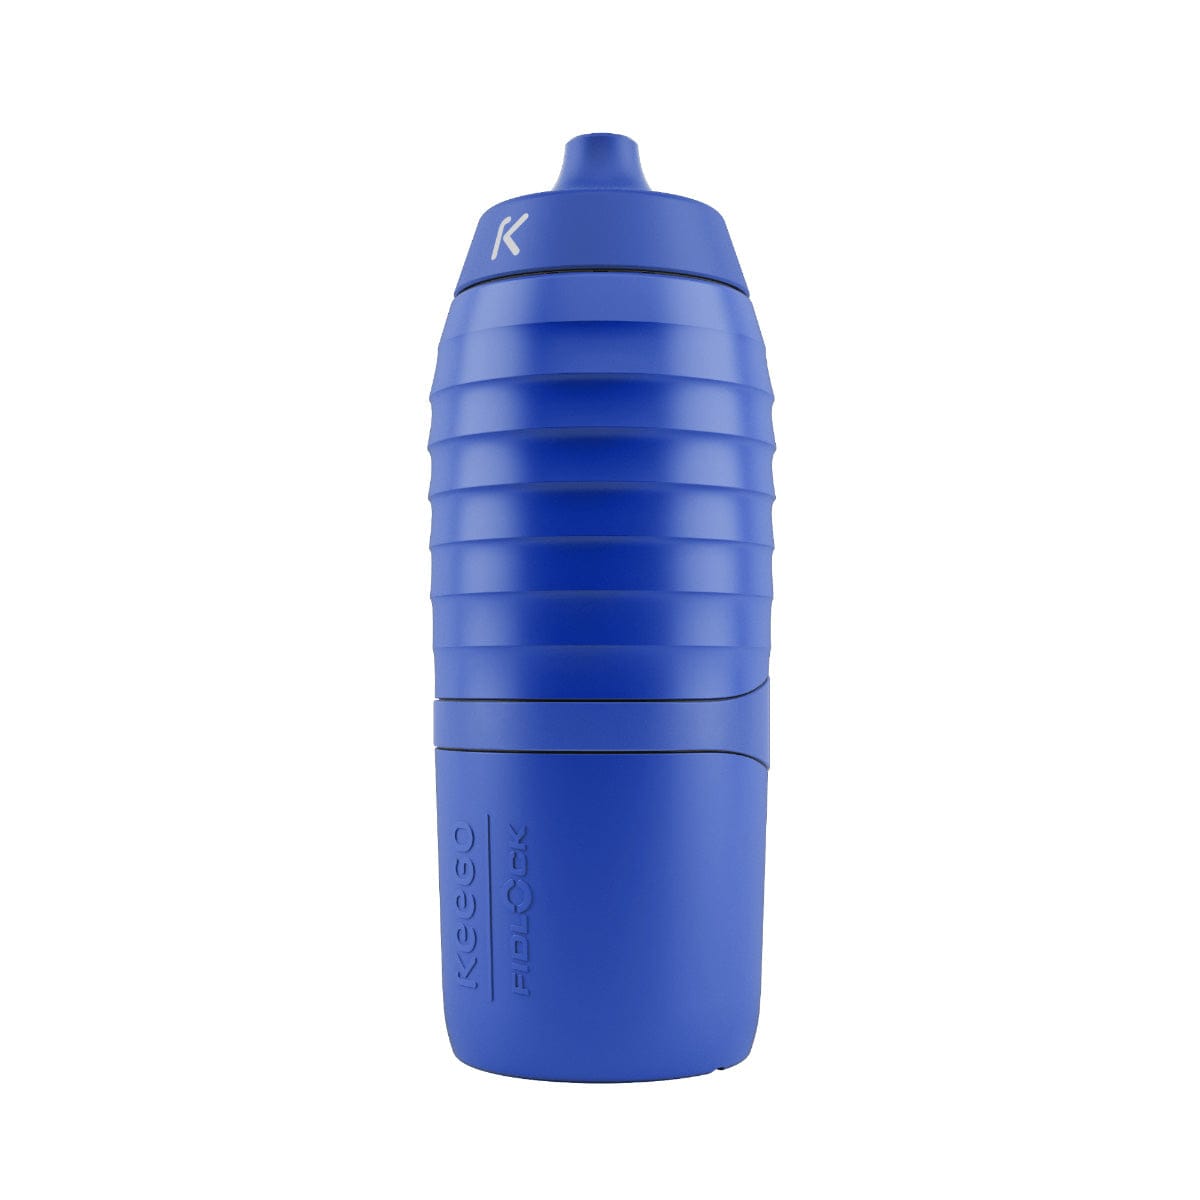 Blue bike bottle TWIST x KEEGO 0.6L upright